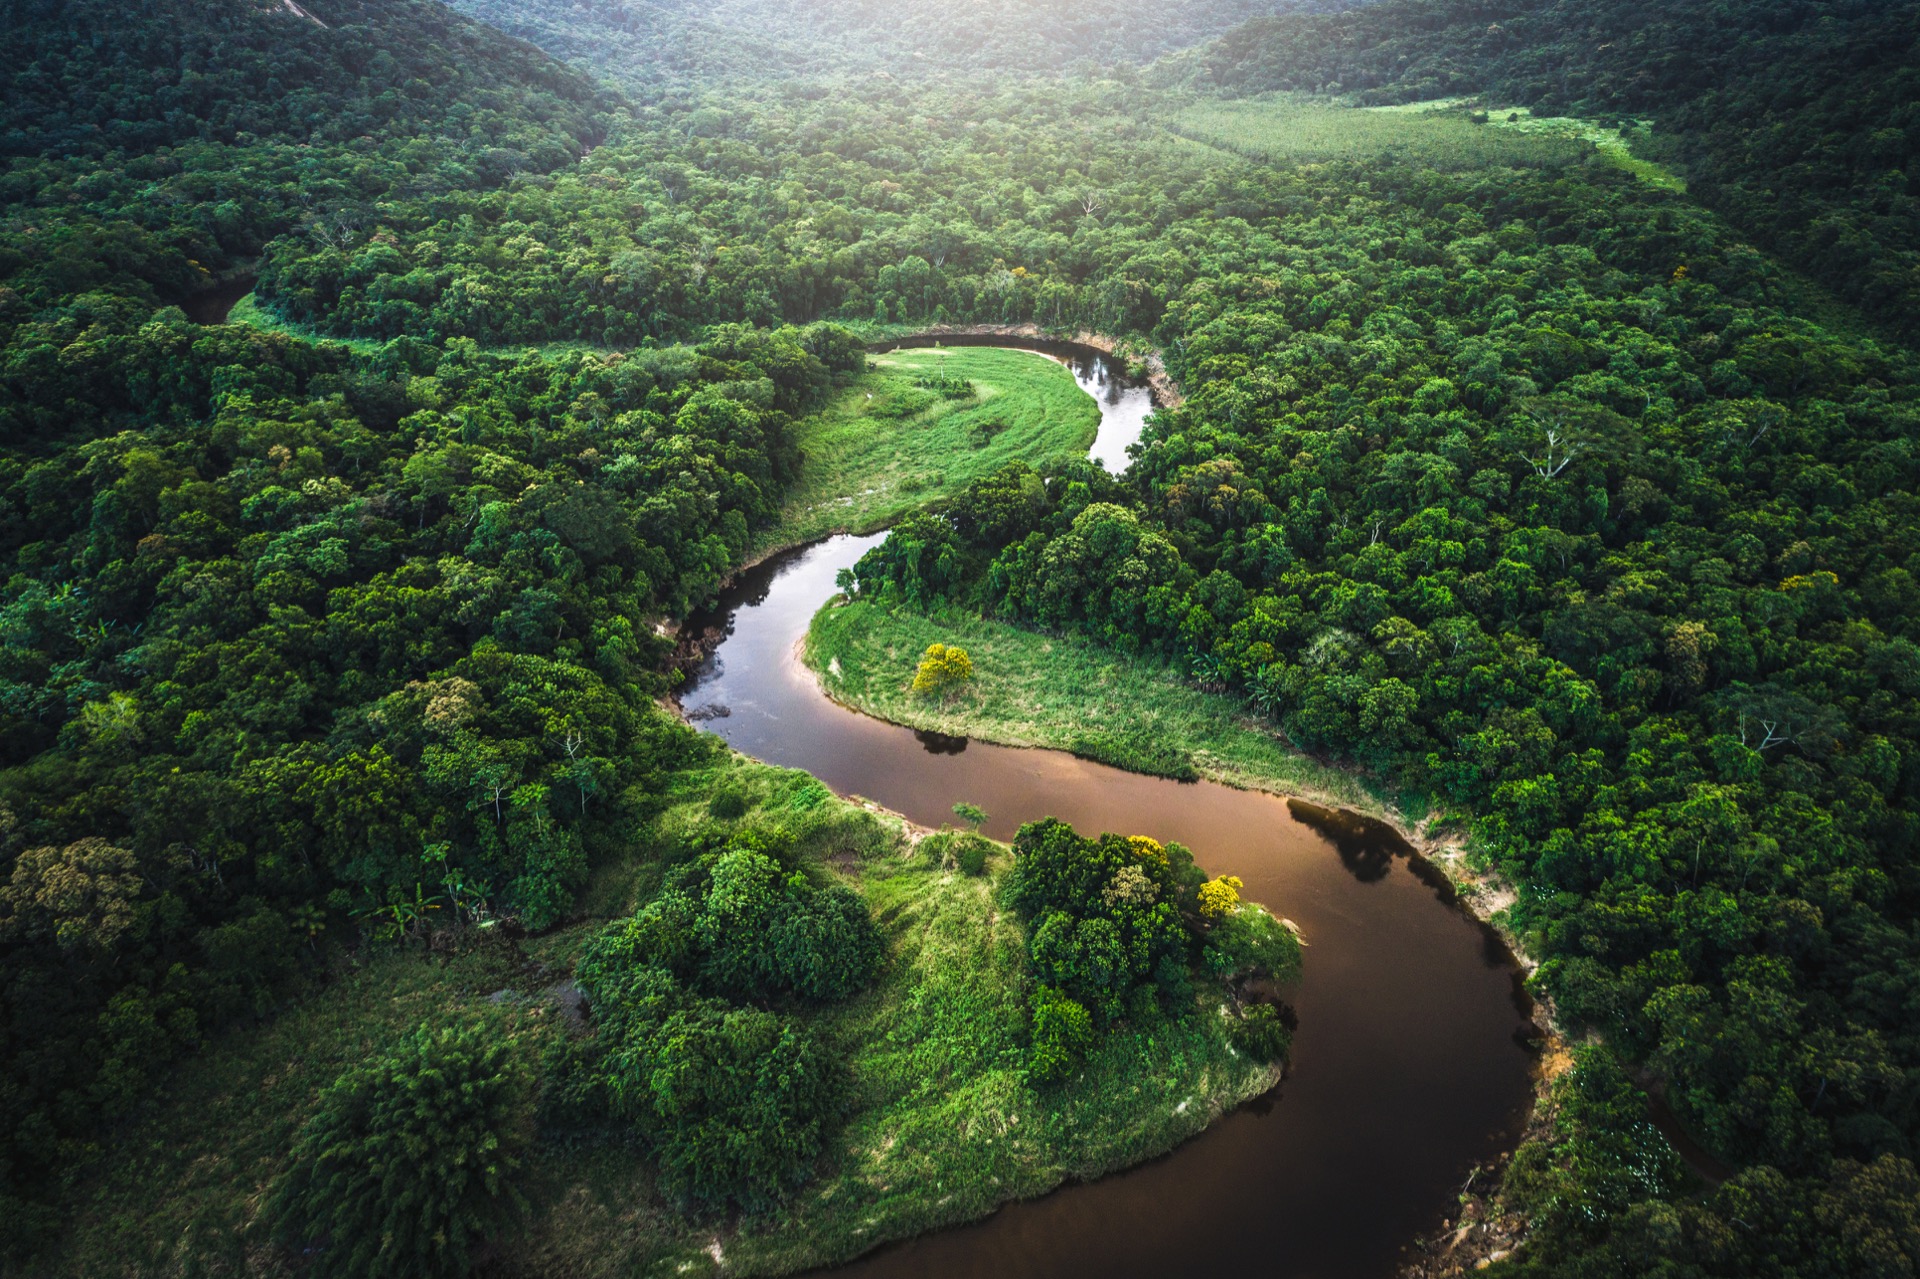 L'Amazonie est la deuxième forêt la plus grande du monde, et sa densité ne permet pas de trouver facilement tous les secrets archéologiques qui s'y cachent. © FG Trade, iStock